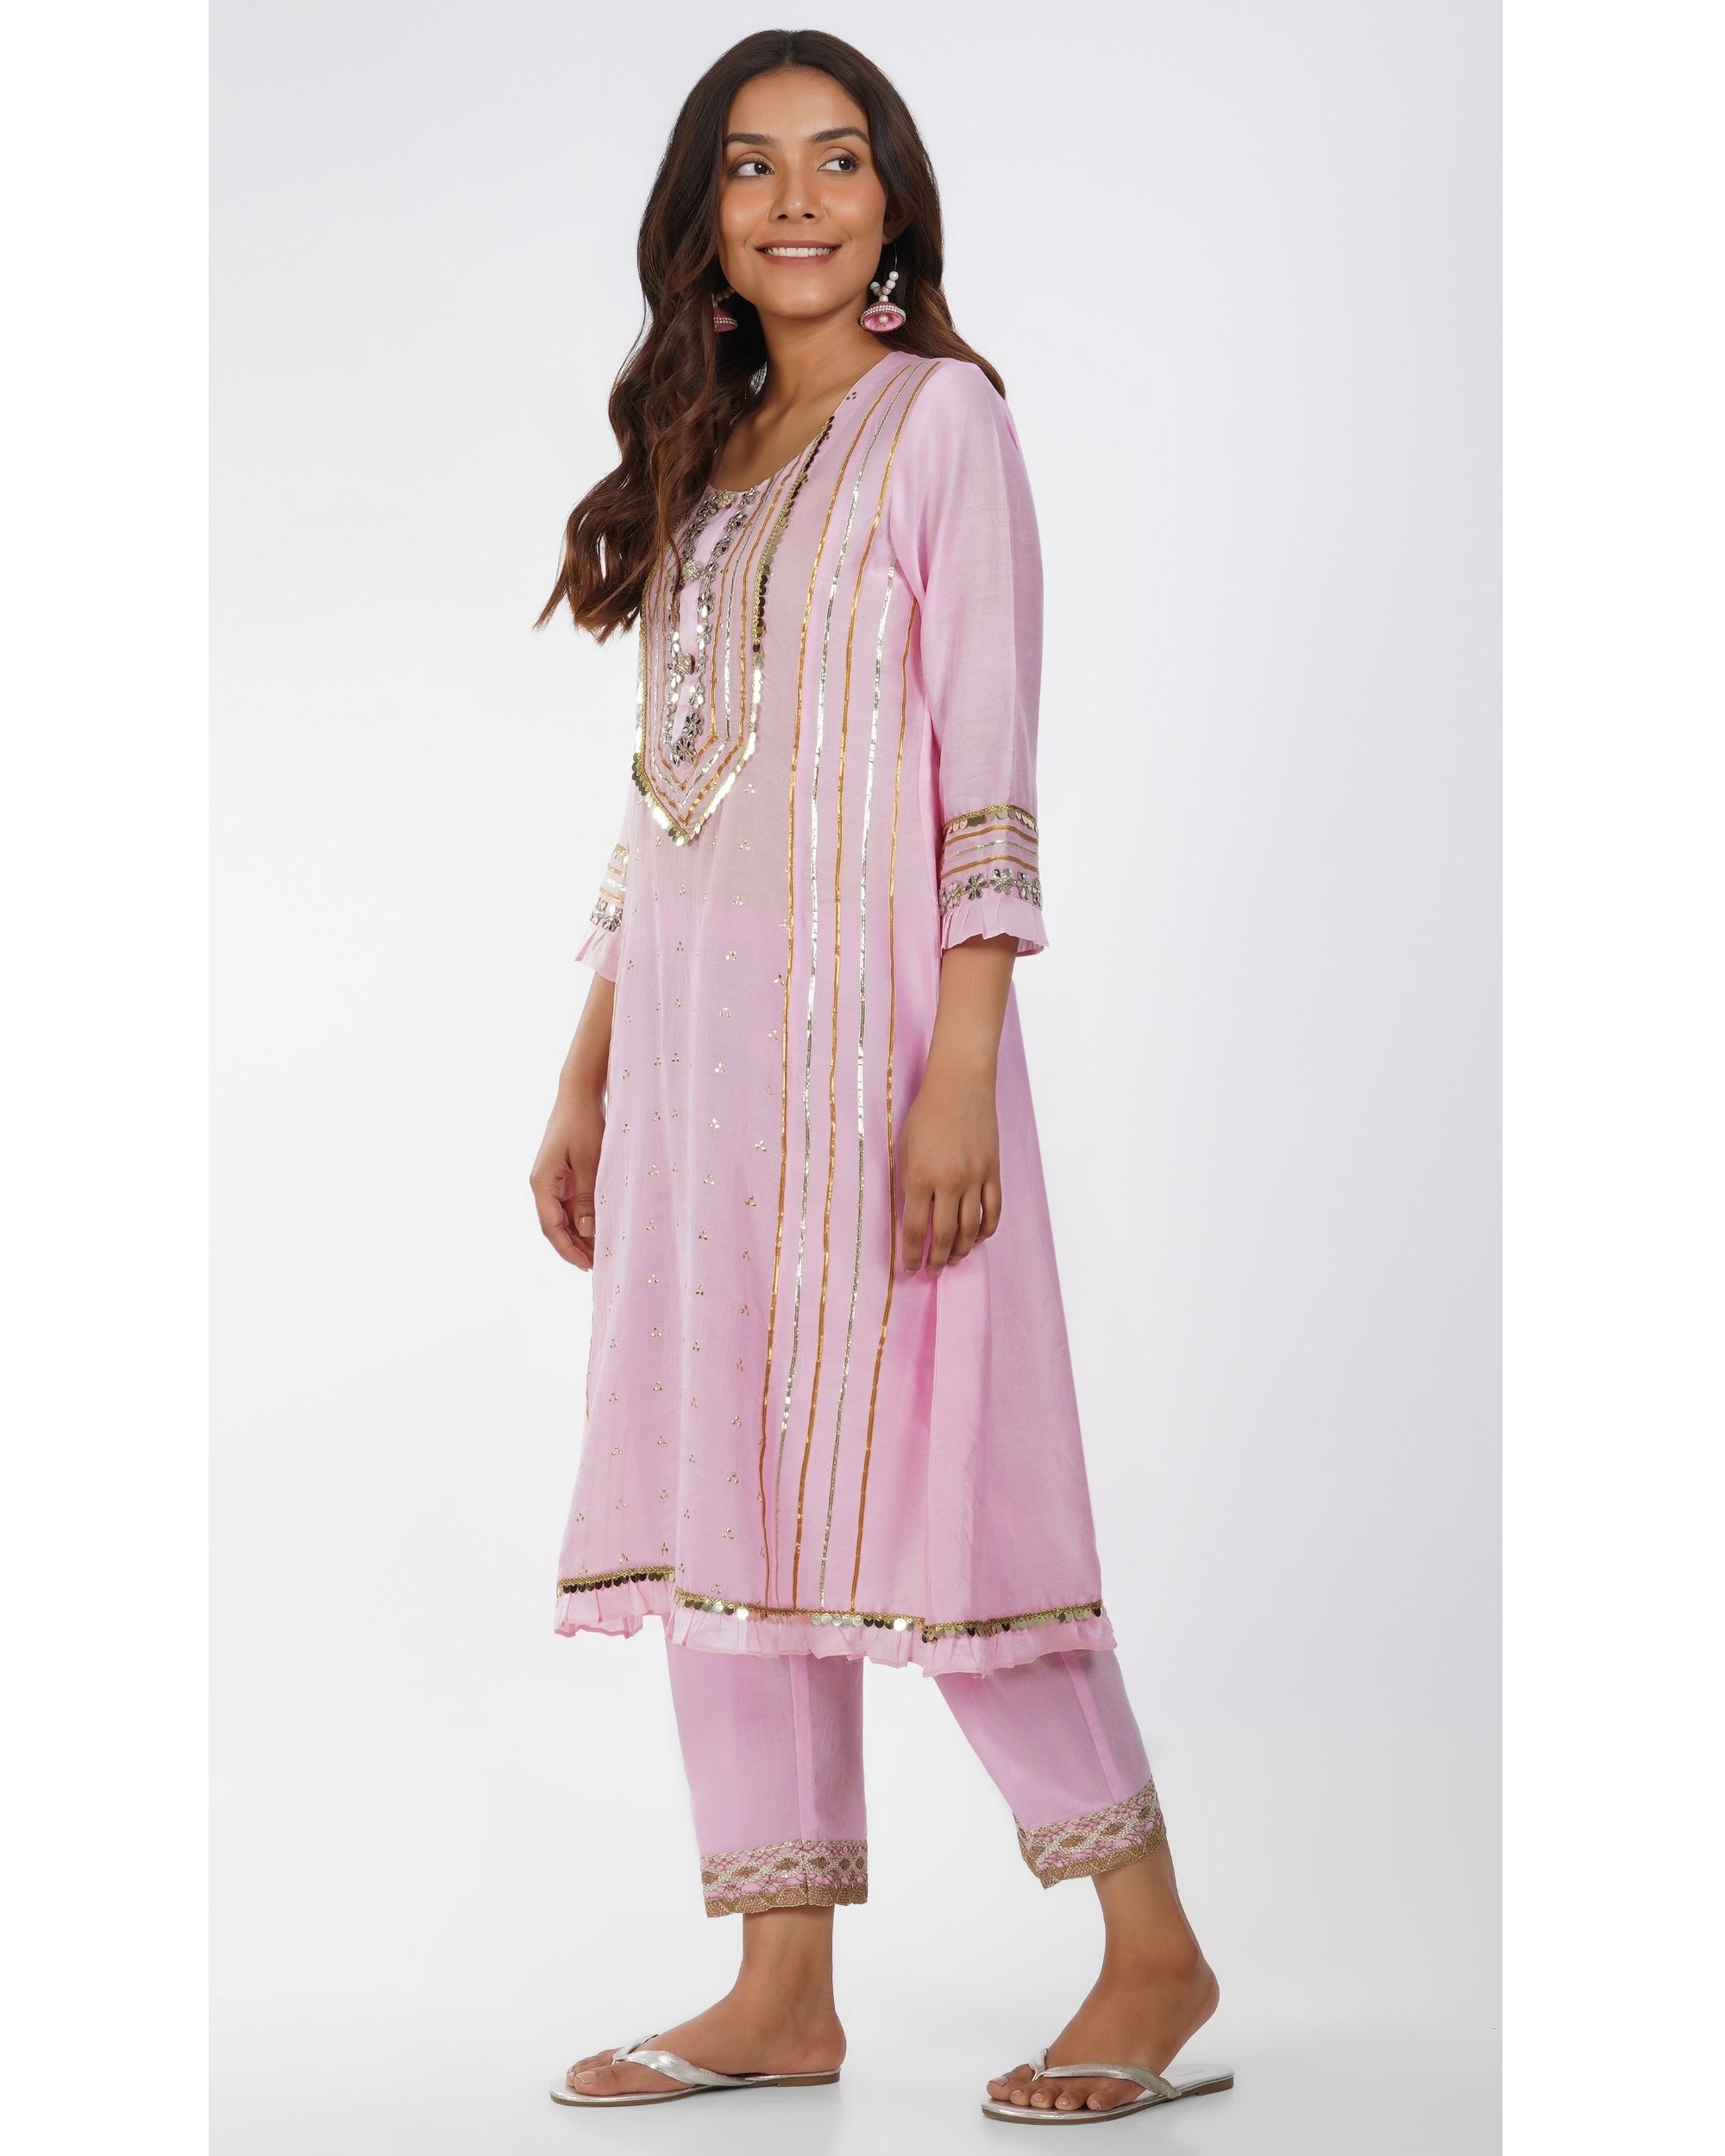 Light pink gota kurta with lace pants - set of two